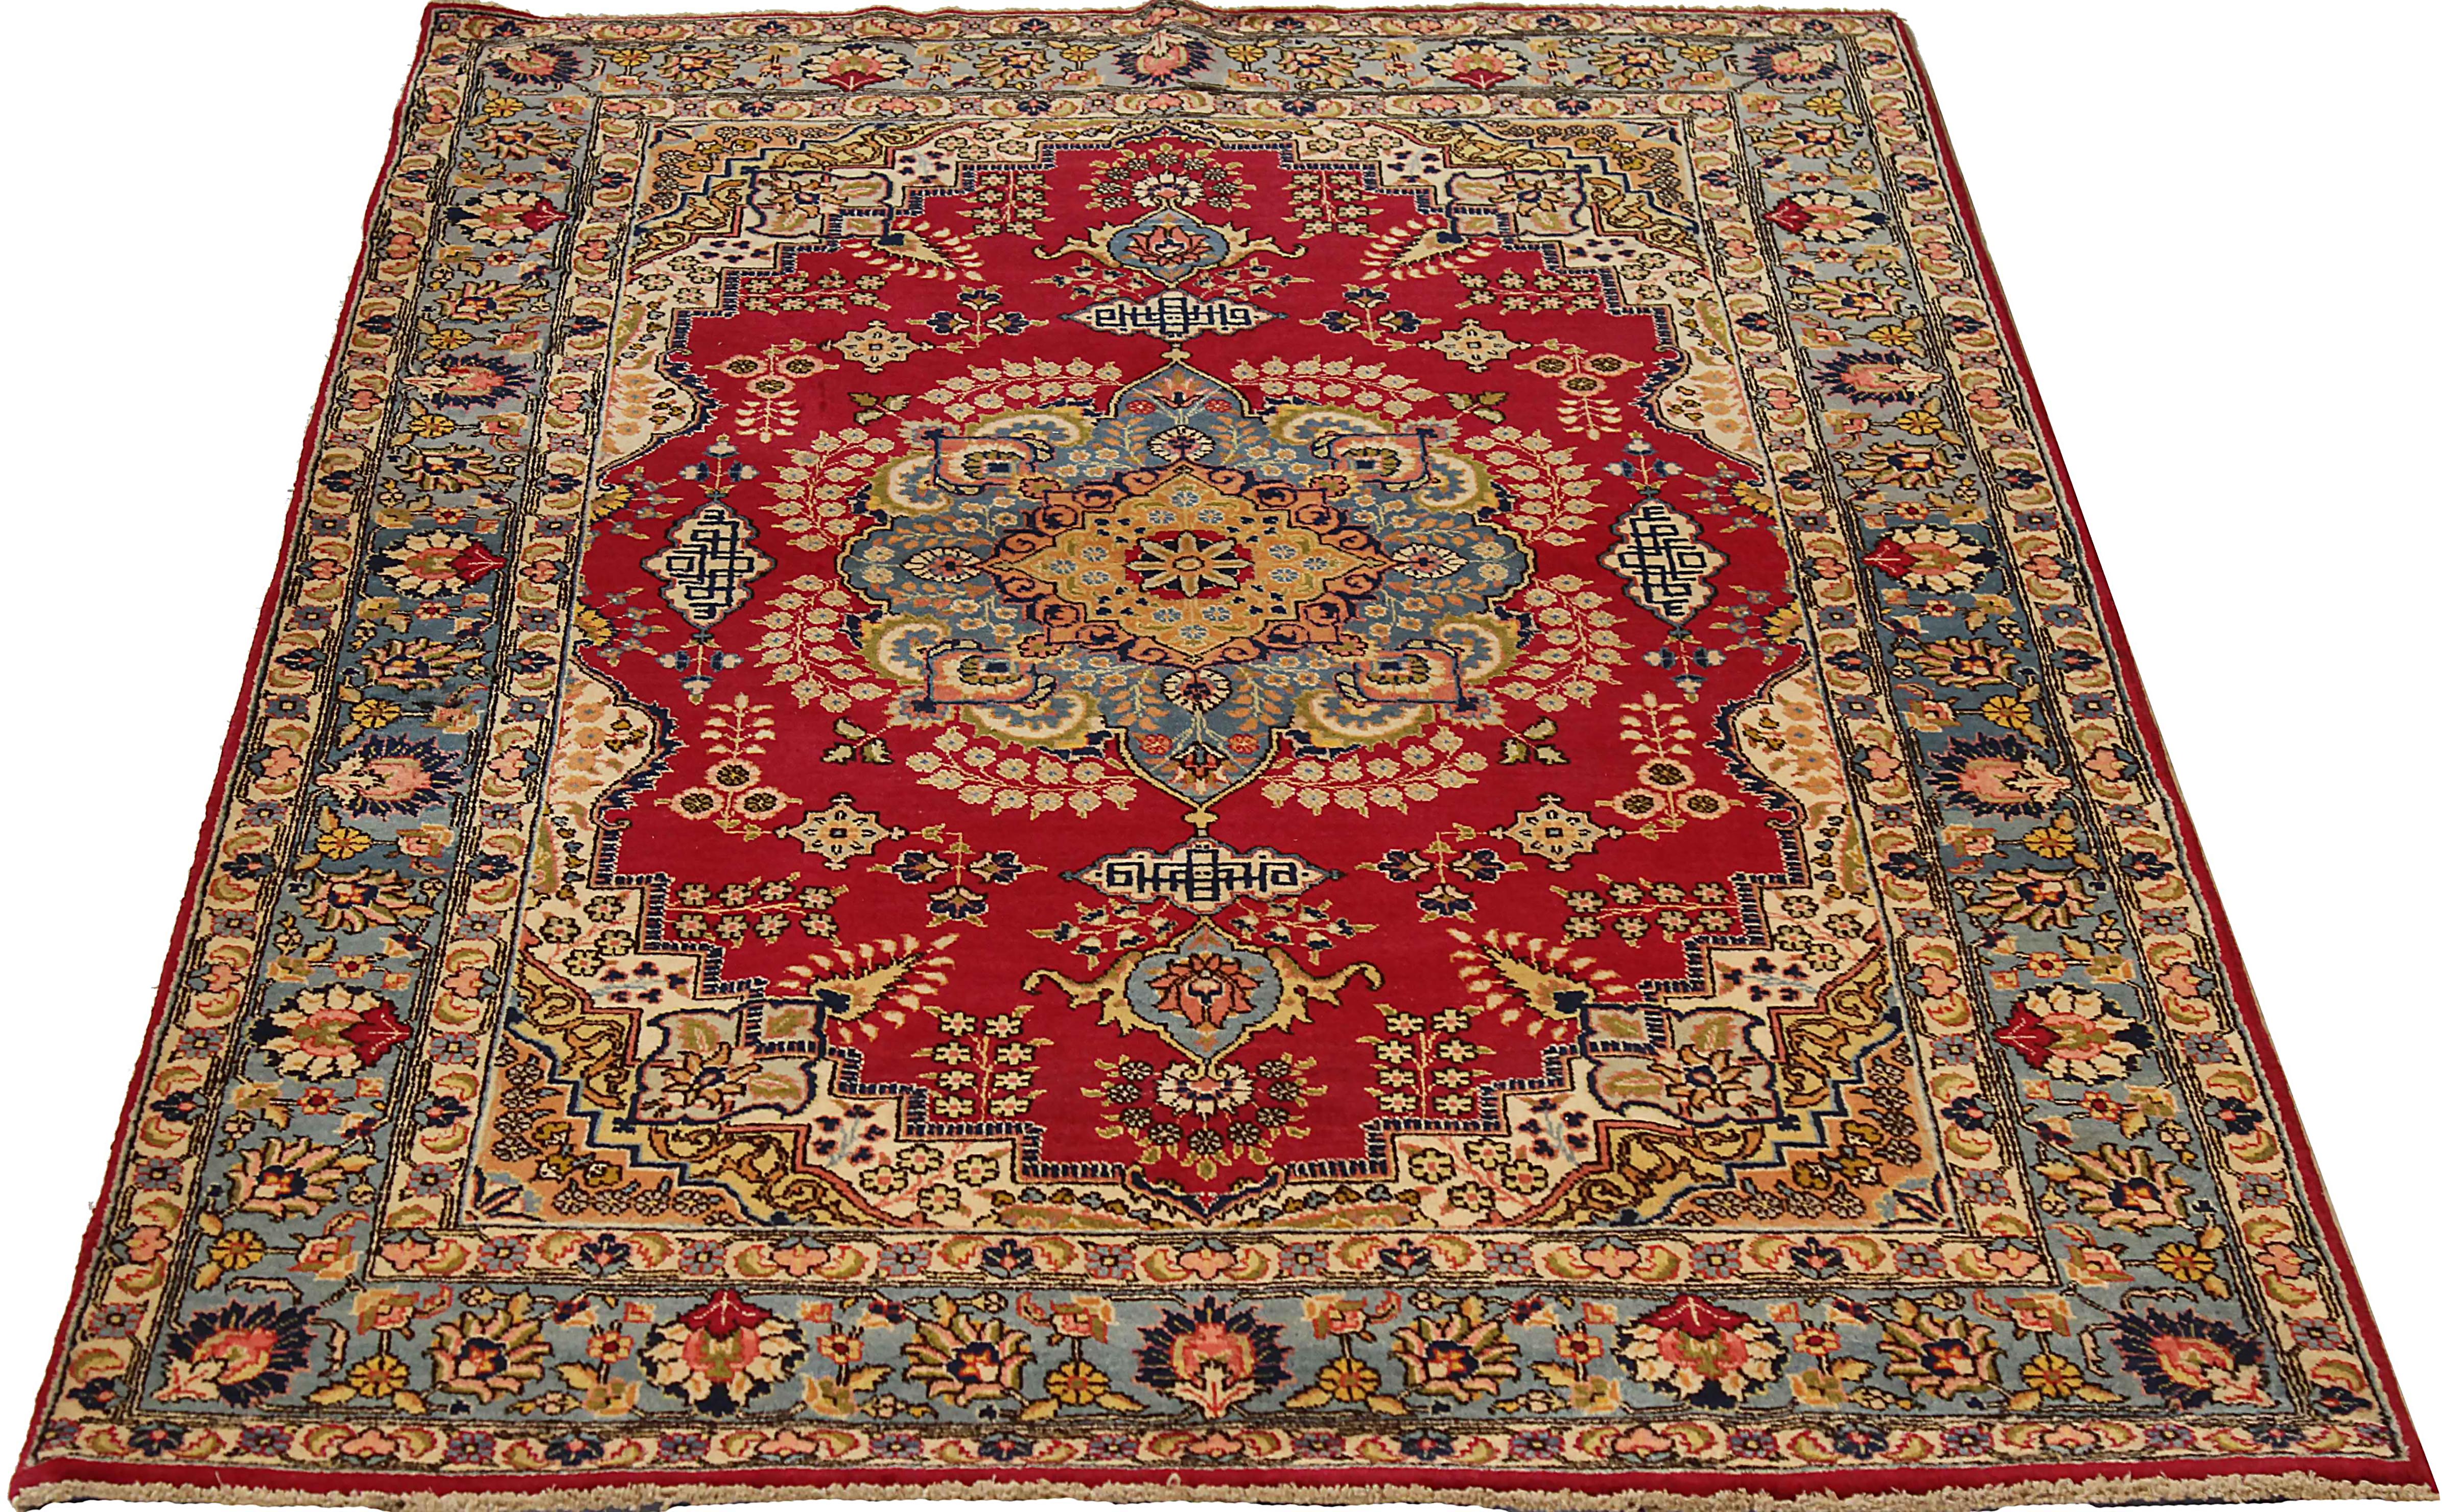 Antiker persischer Teppich, handgewebt aus feinster Schafswolle. Es ist mit natürlichen pflanzlichen Farbstoffen gefärbt, die für Menschen und Haustiere sicher sind. Es handelt sich um ein traditionelles Mashad-Design, das von erfahrenen